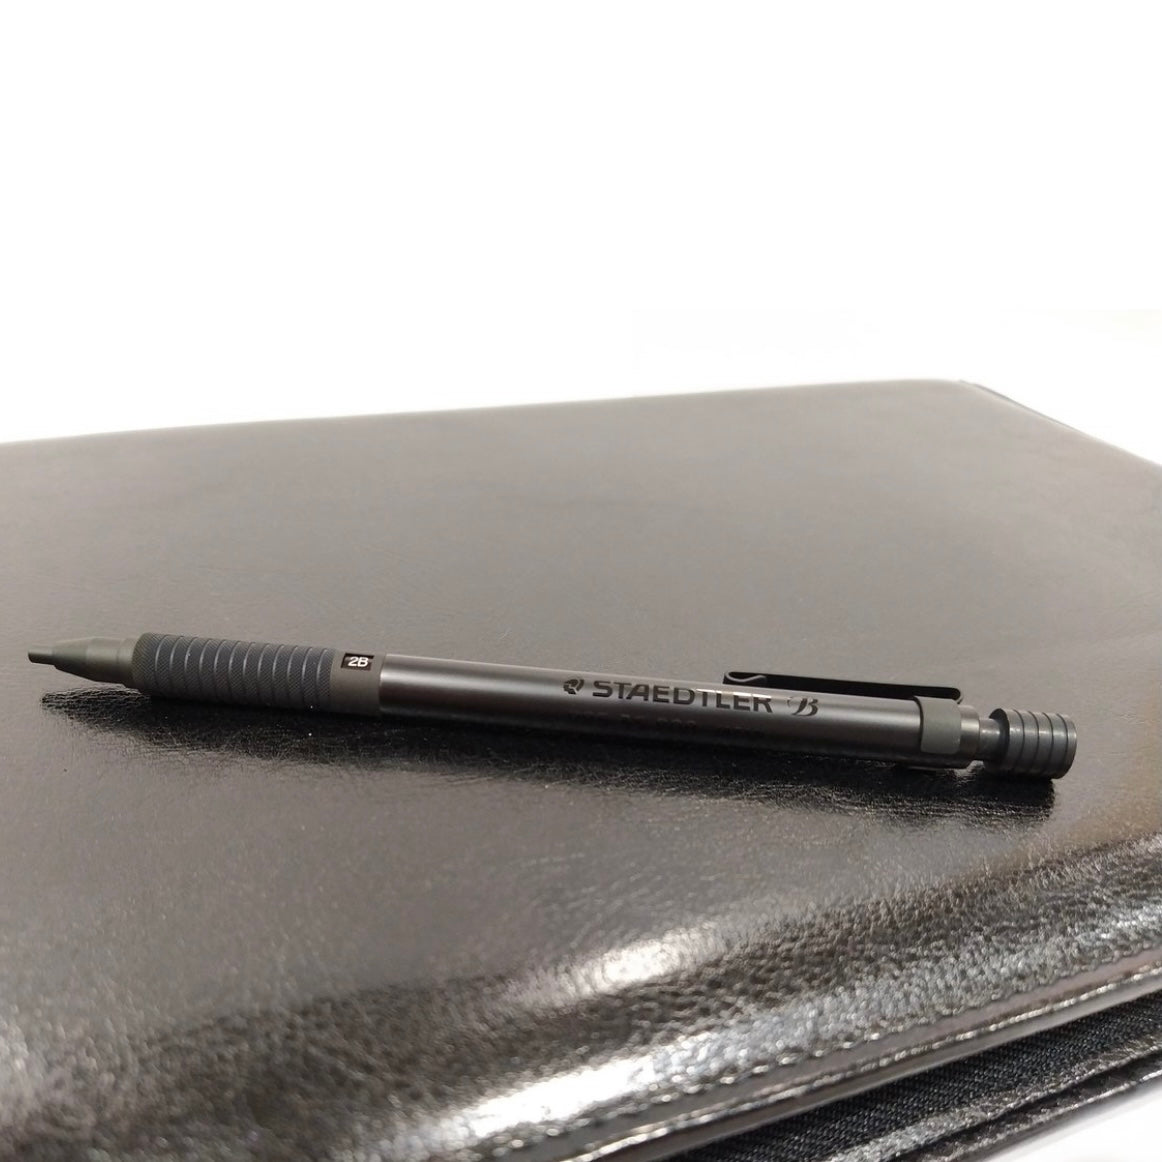 STAEDTLER 925-35 Series Drafting Pencil (0.5 mm / 2.0 mm) 專業繪圖